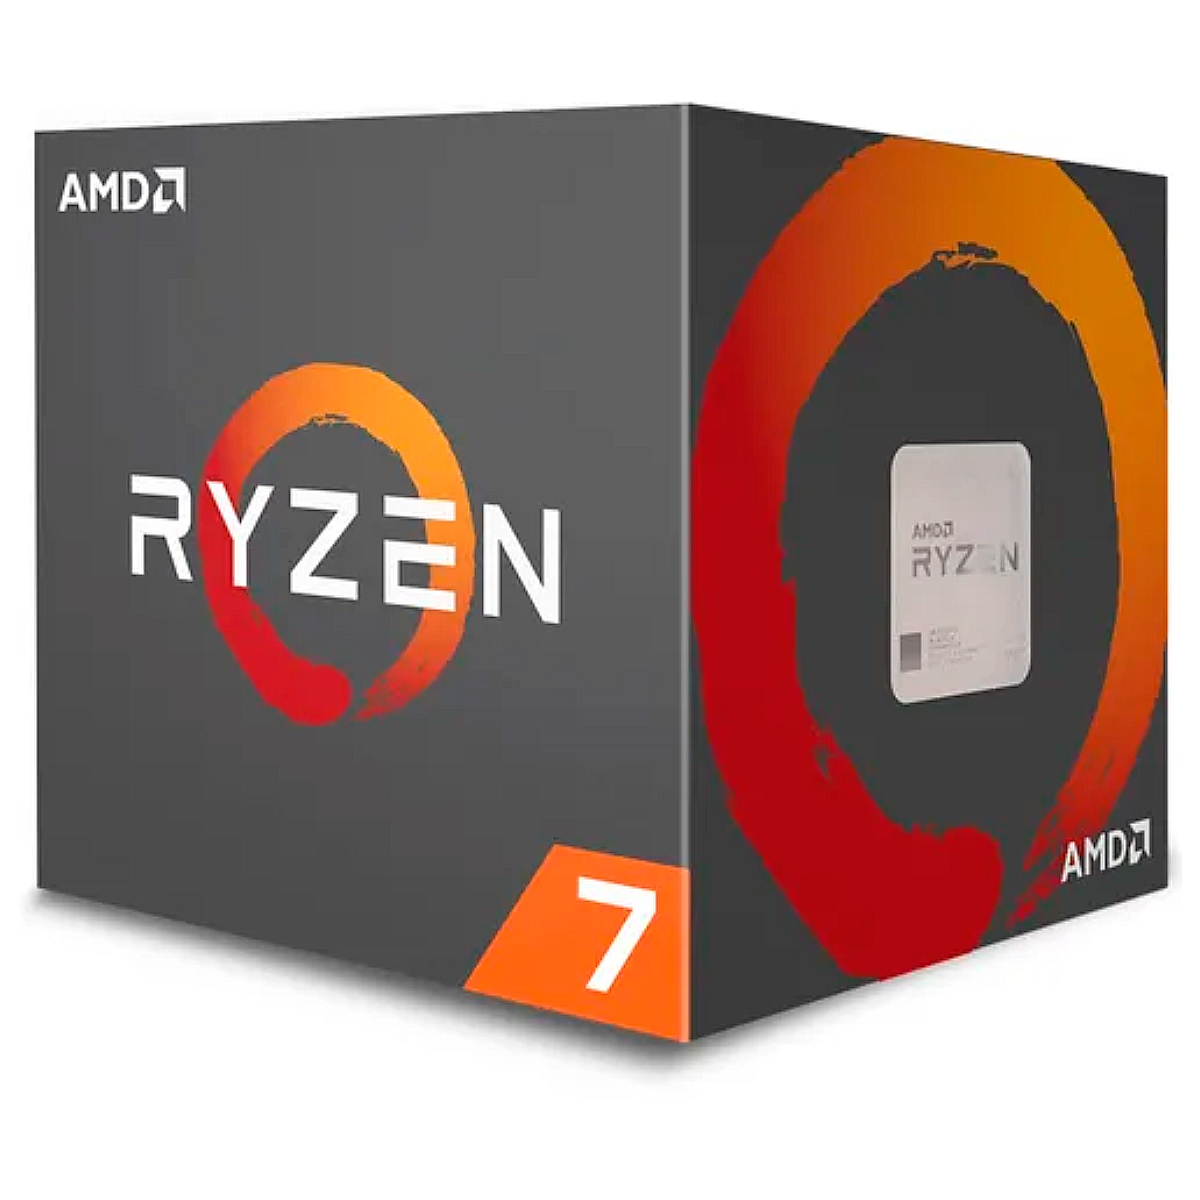 AMD Ryzen™ 7 2700X Octa Core - 16 Threads - 3.7GHz (Turbo 4.35GHz) - Cache 20MB - AM4 - TDP 105W - Wraith Prism RGB Cooler - YD270XBGAFBOX - sem gráfico integrado